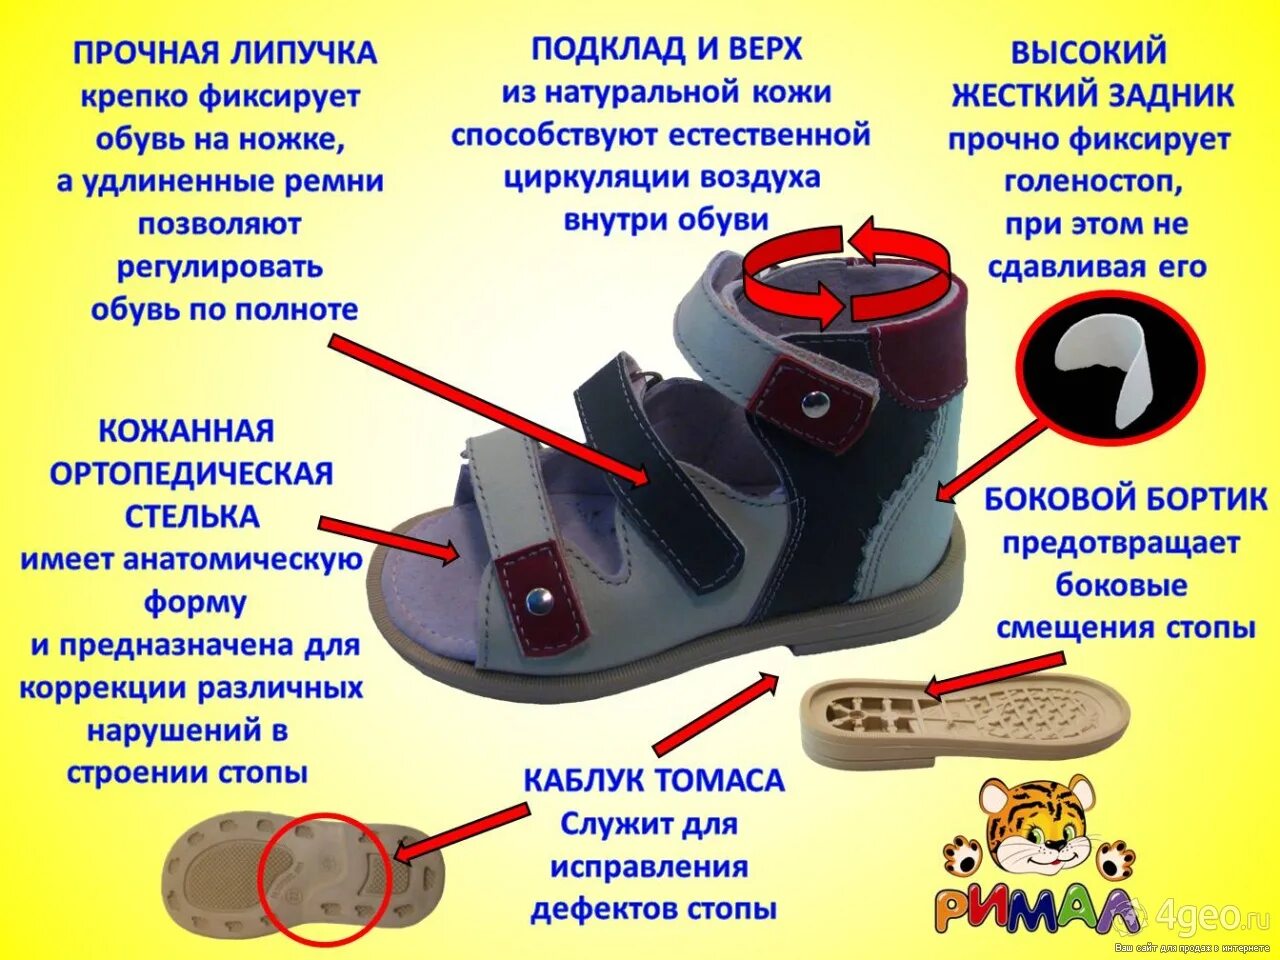 Обувь с жестким задником. Обувь с жестким задником для детей. Ортопедическая обувь с жестким задником для детей. Жесткий задник в детской обуви. Пятки для кроссовок